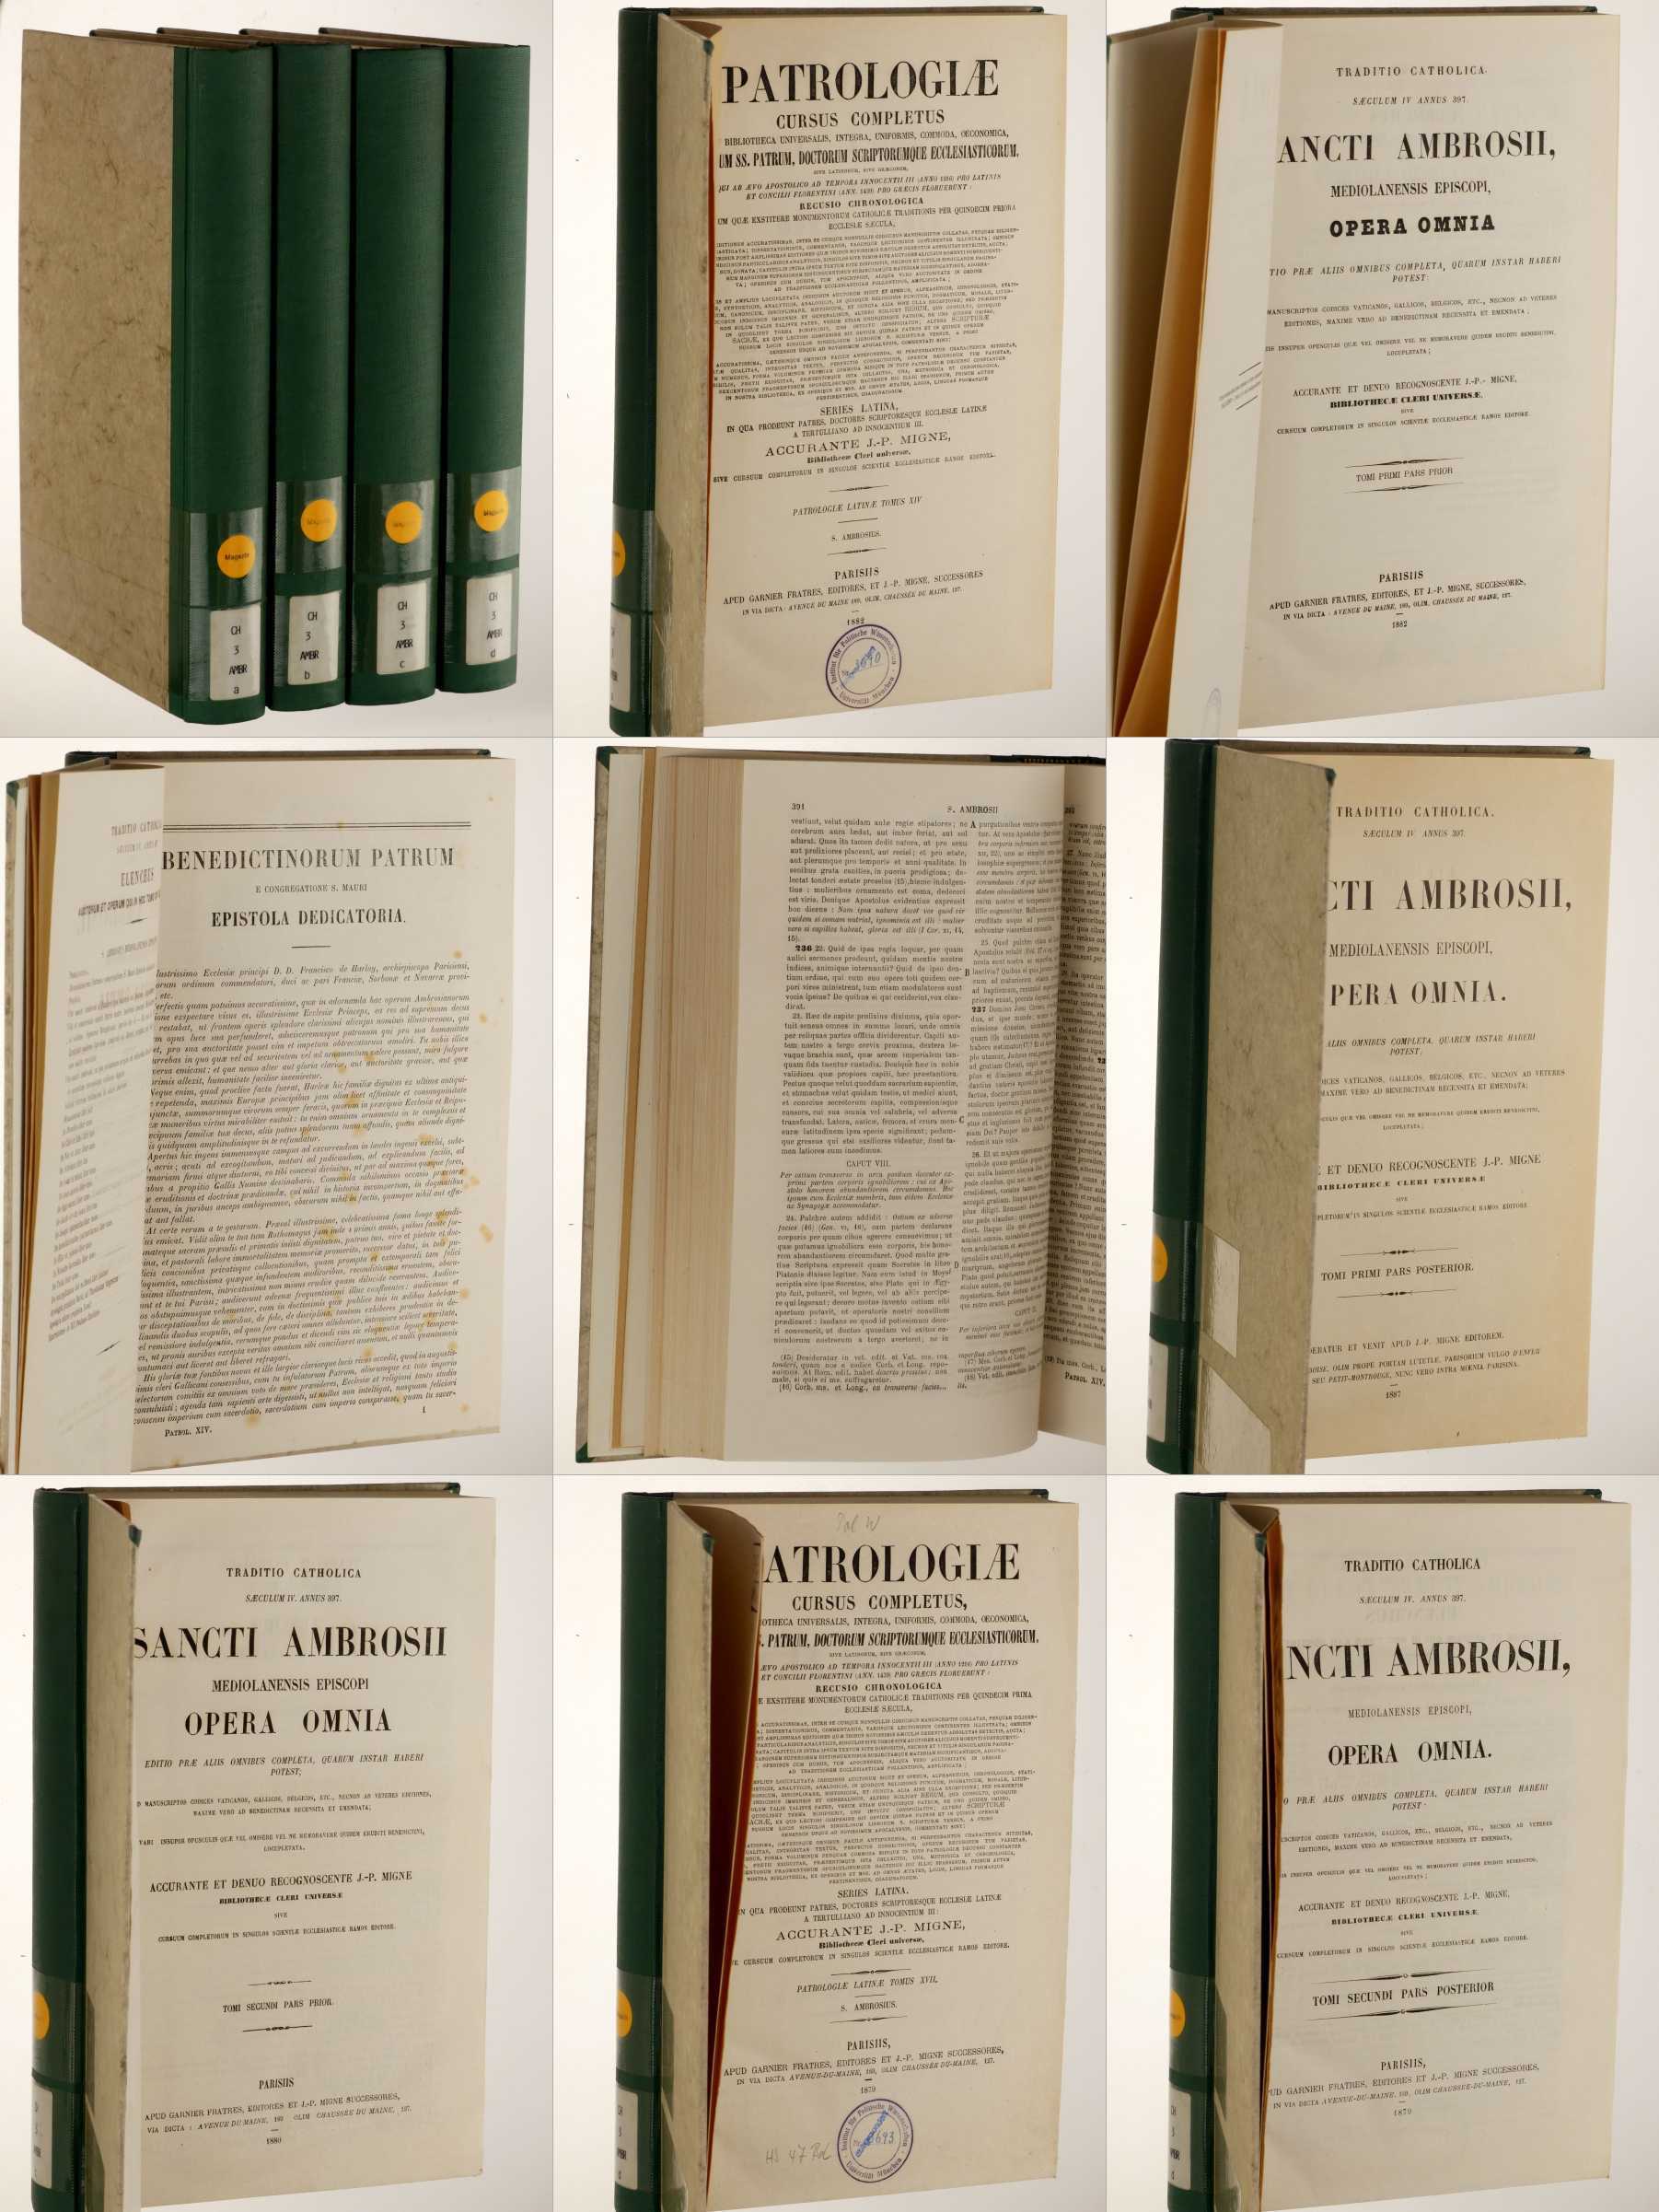 Series latina; Vol. 014-17: Ambrosius:  Opera omnia. Tomus I/ in 4 partes. 